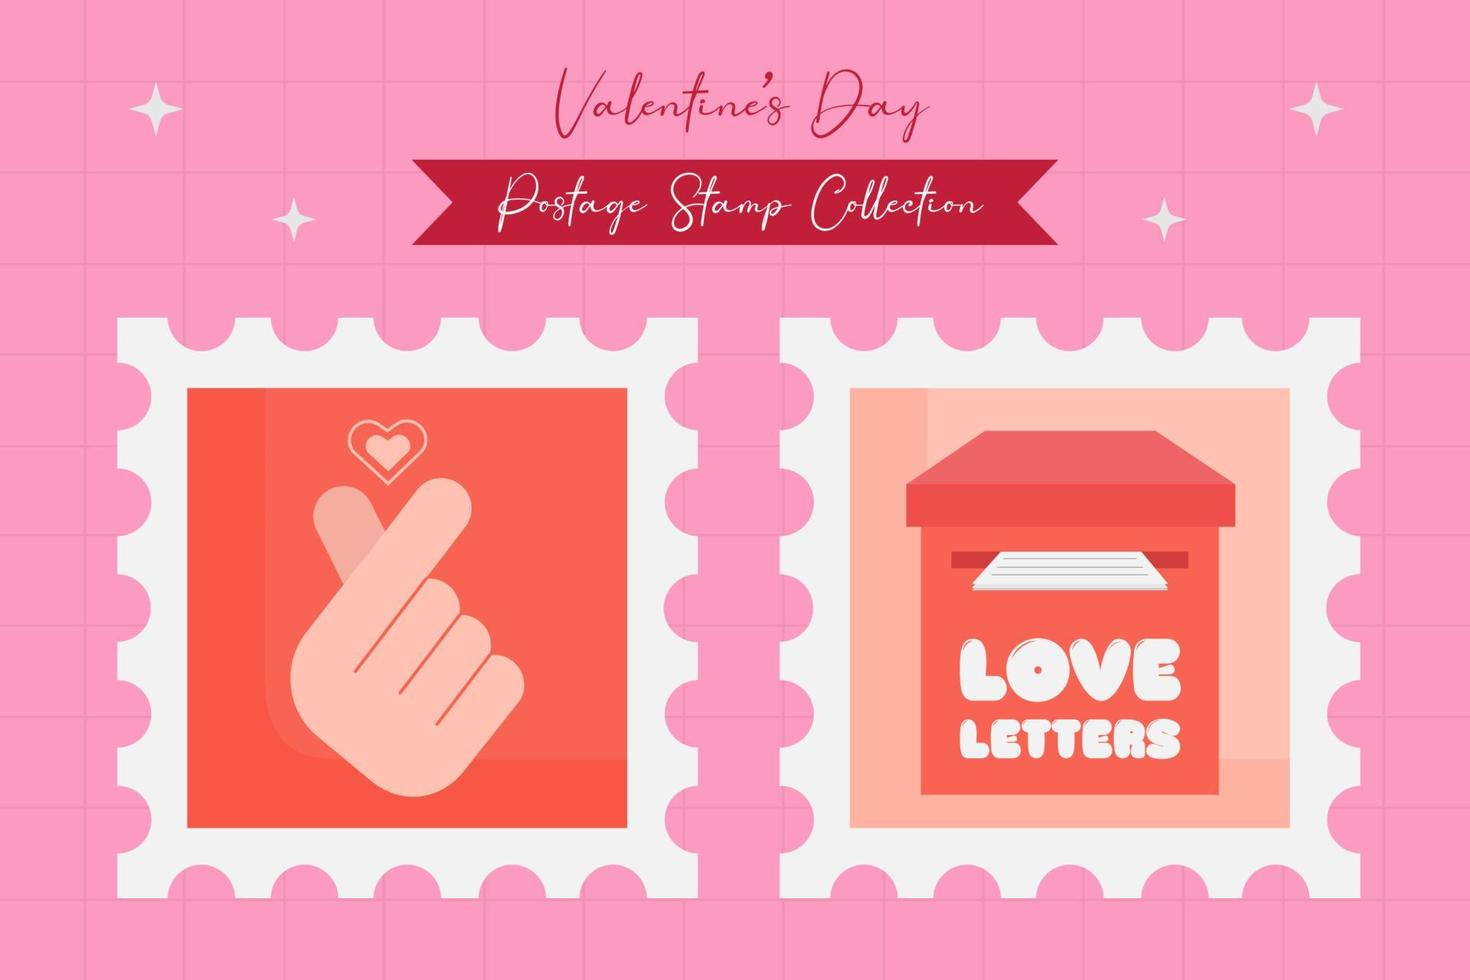 colección de elementos de sello postal del día de san valentín en diseño plano vector